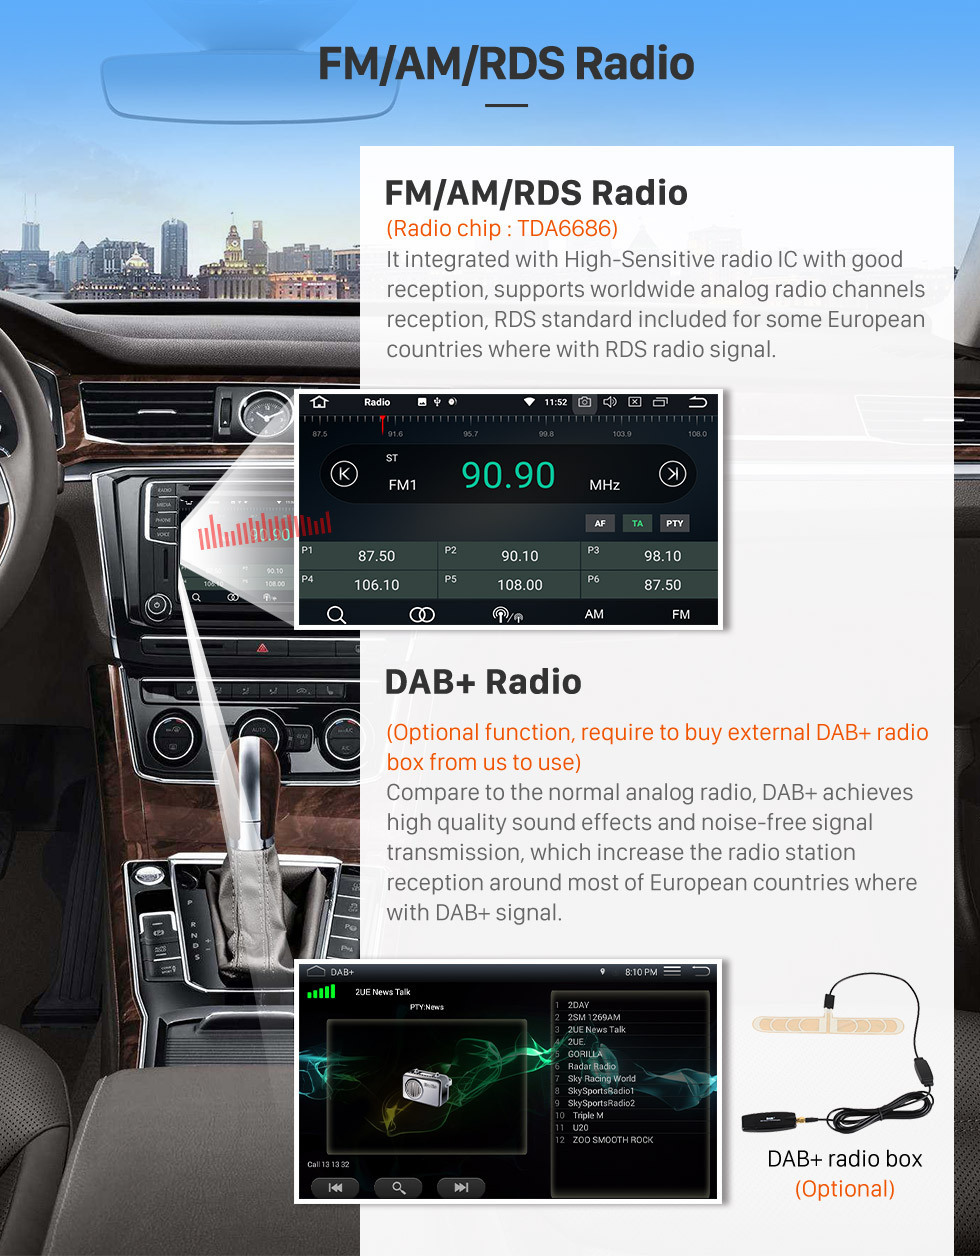 Seicane Puro Android 9.0 Autoradio DVD GPS Jefe Unidad para 2004-2011 Mercedes Benz CLK Class W209 CLK270 CLK320 CLK350 CLK500 CLK550 con Radio RDS Bluetooth 3G WiFi Enlace espejo OBD2